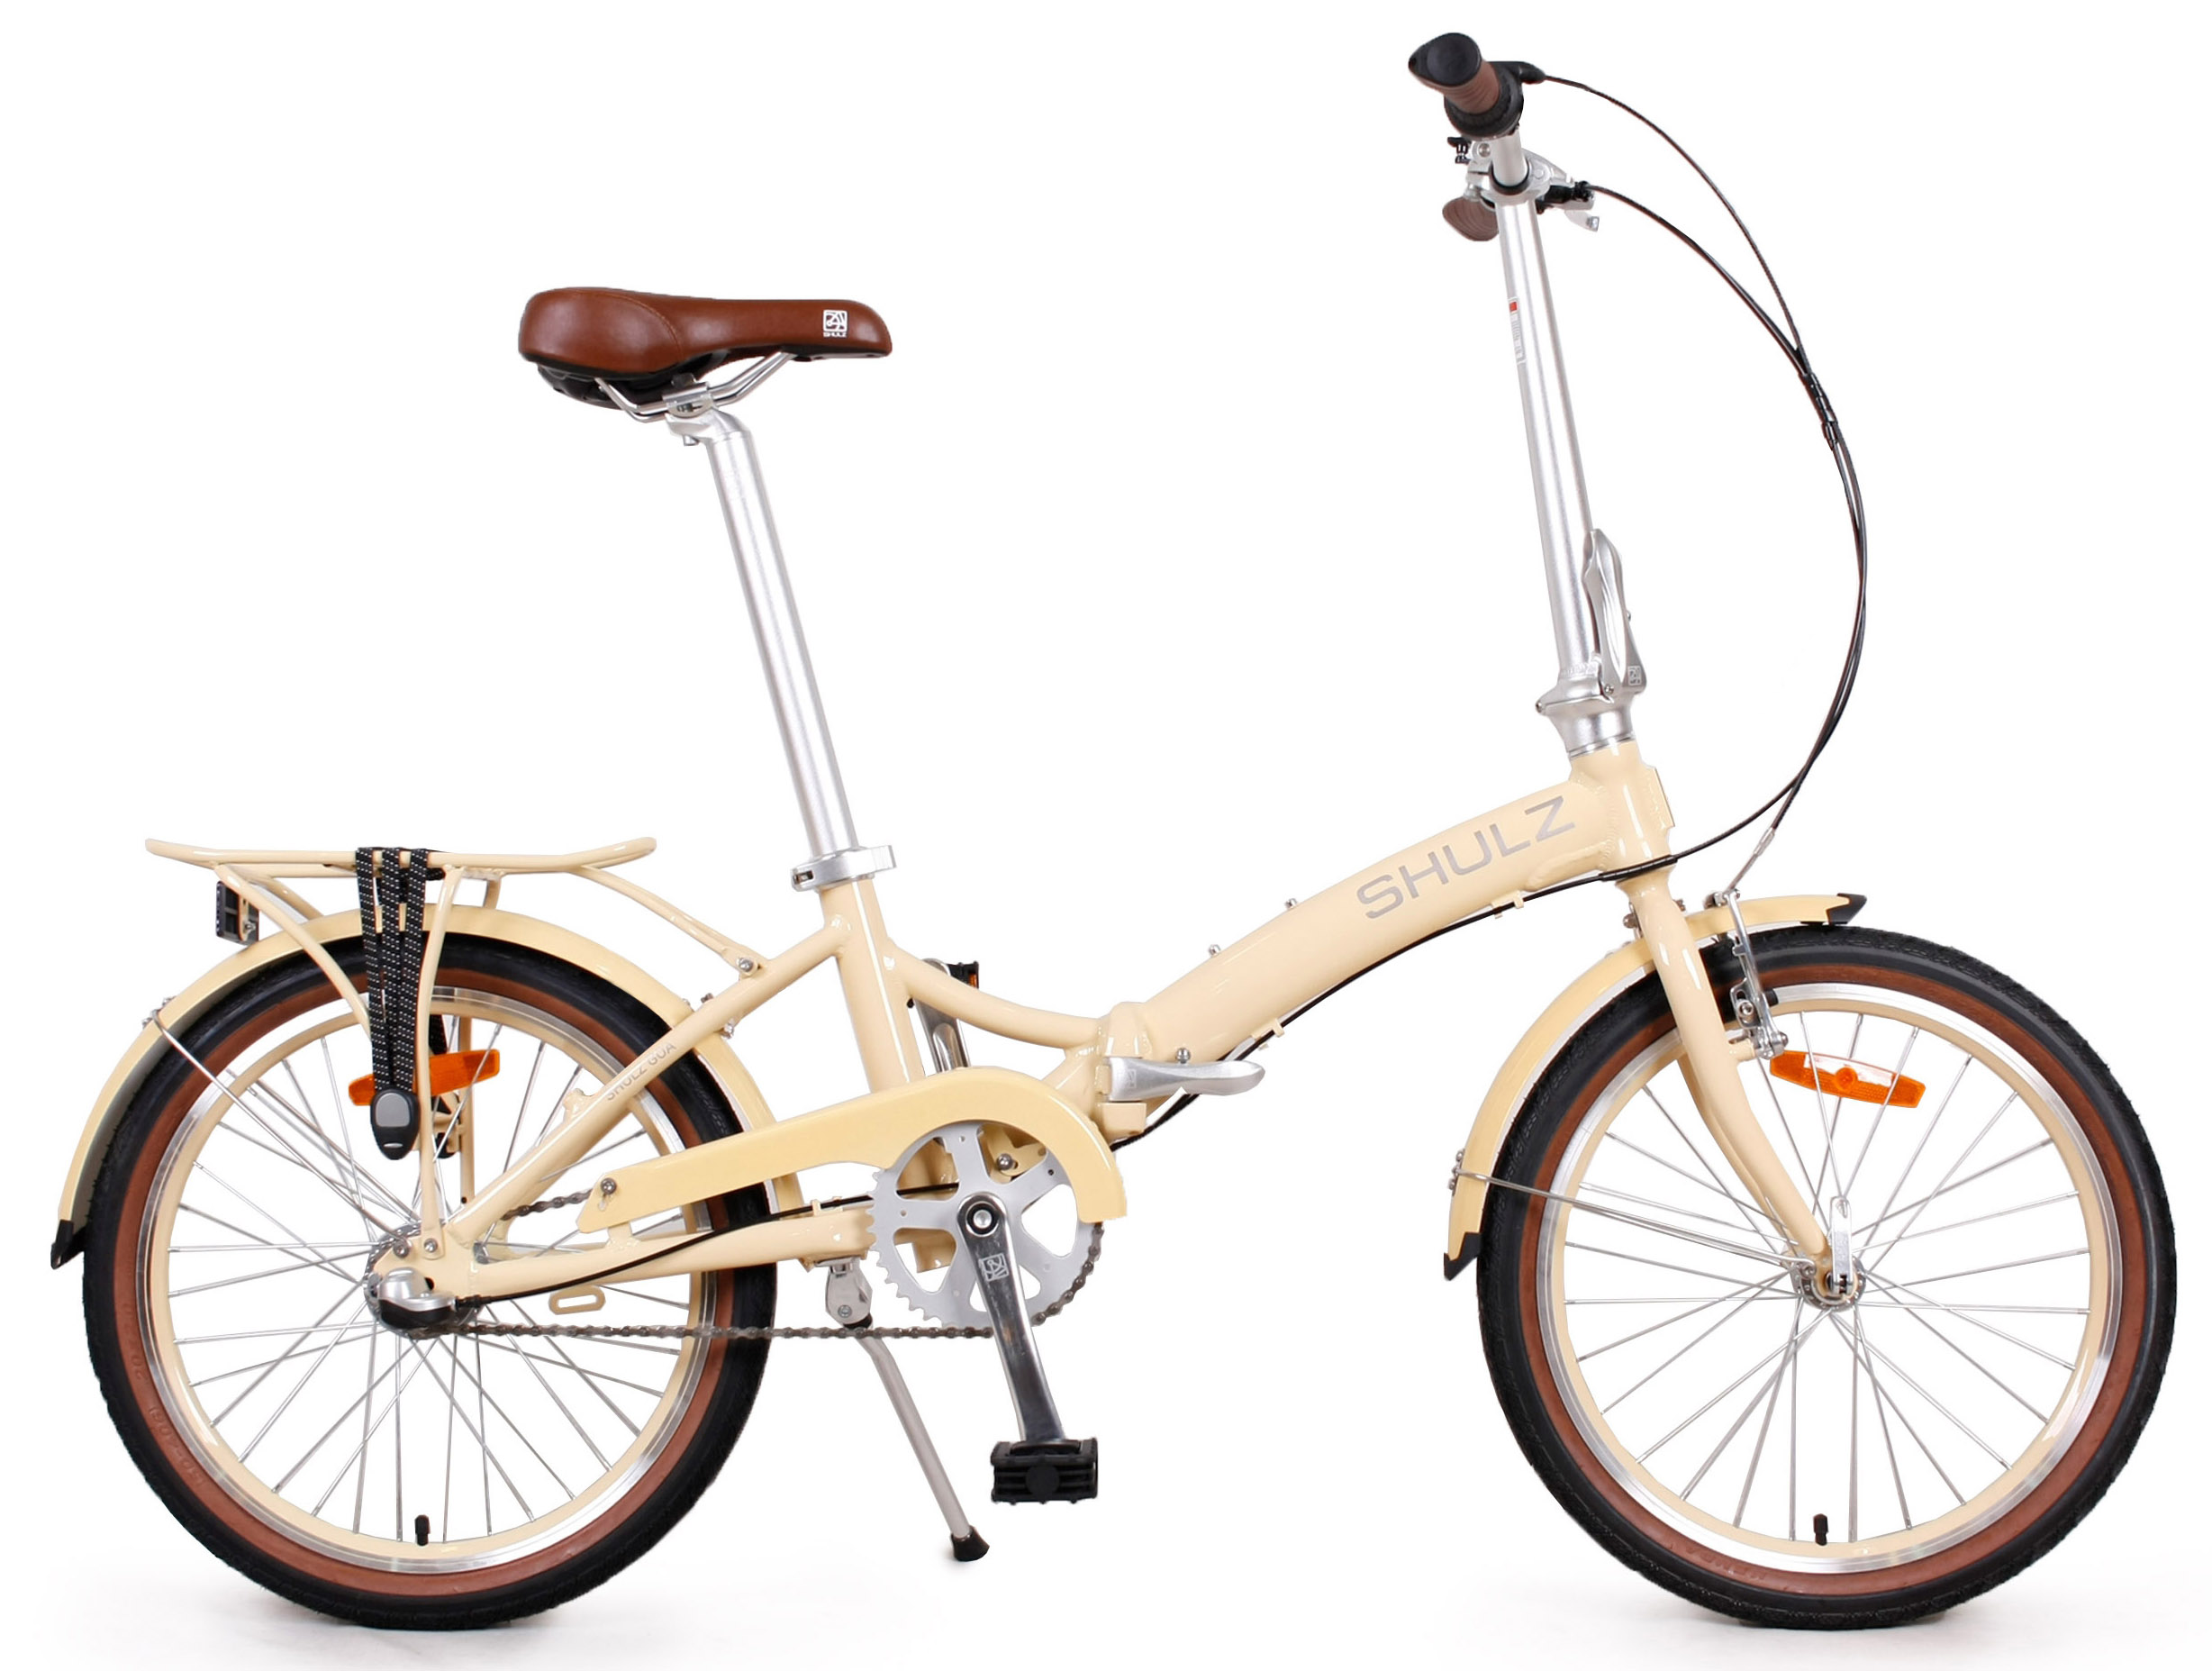  Отзывы о Складном велосипеде Shulz GOA Coaster 2020